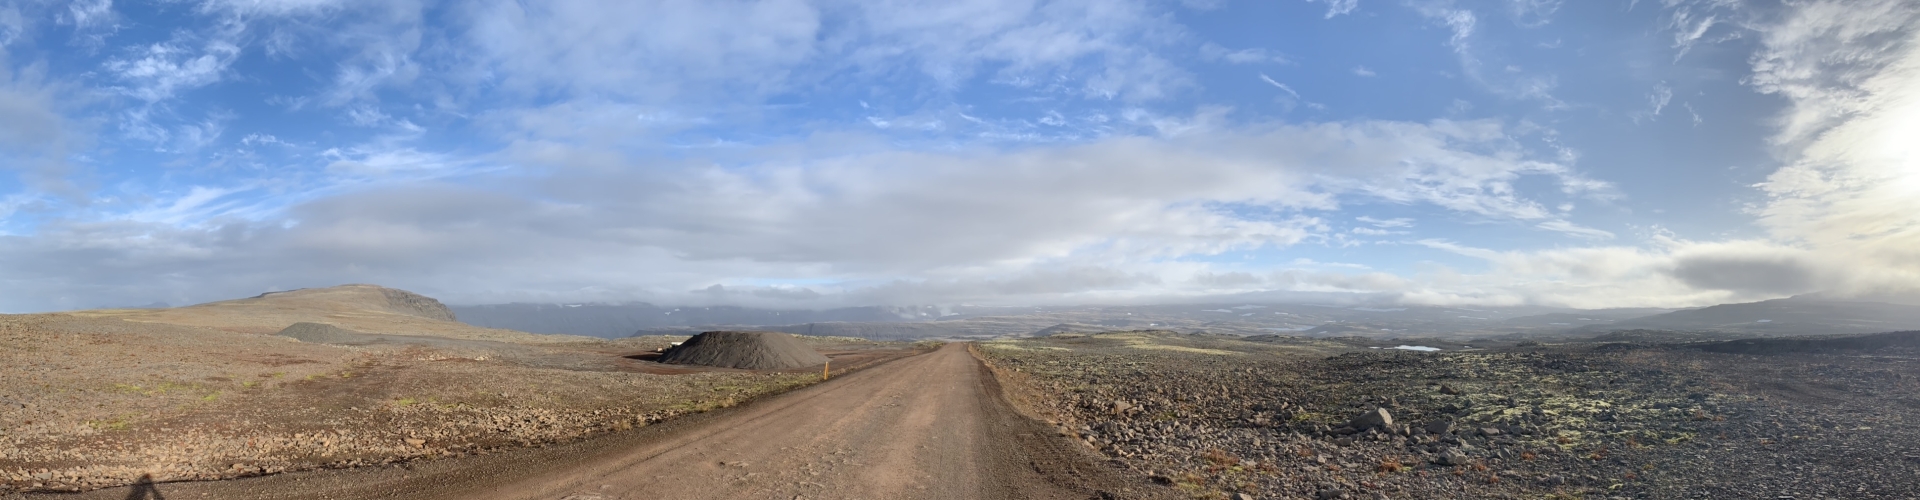 gravelwegen in IJsland